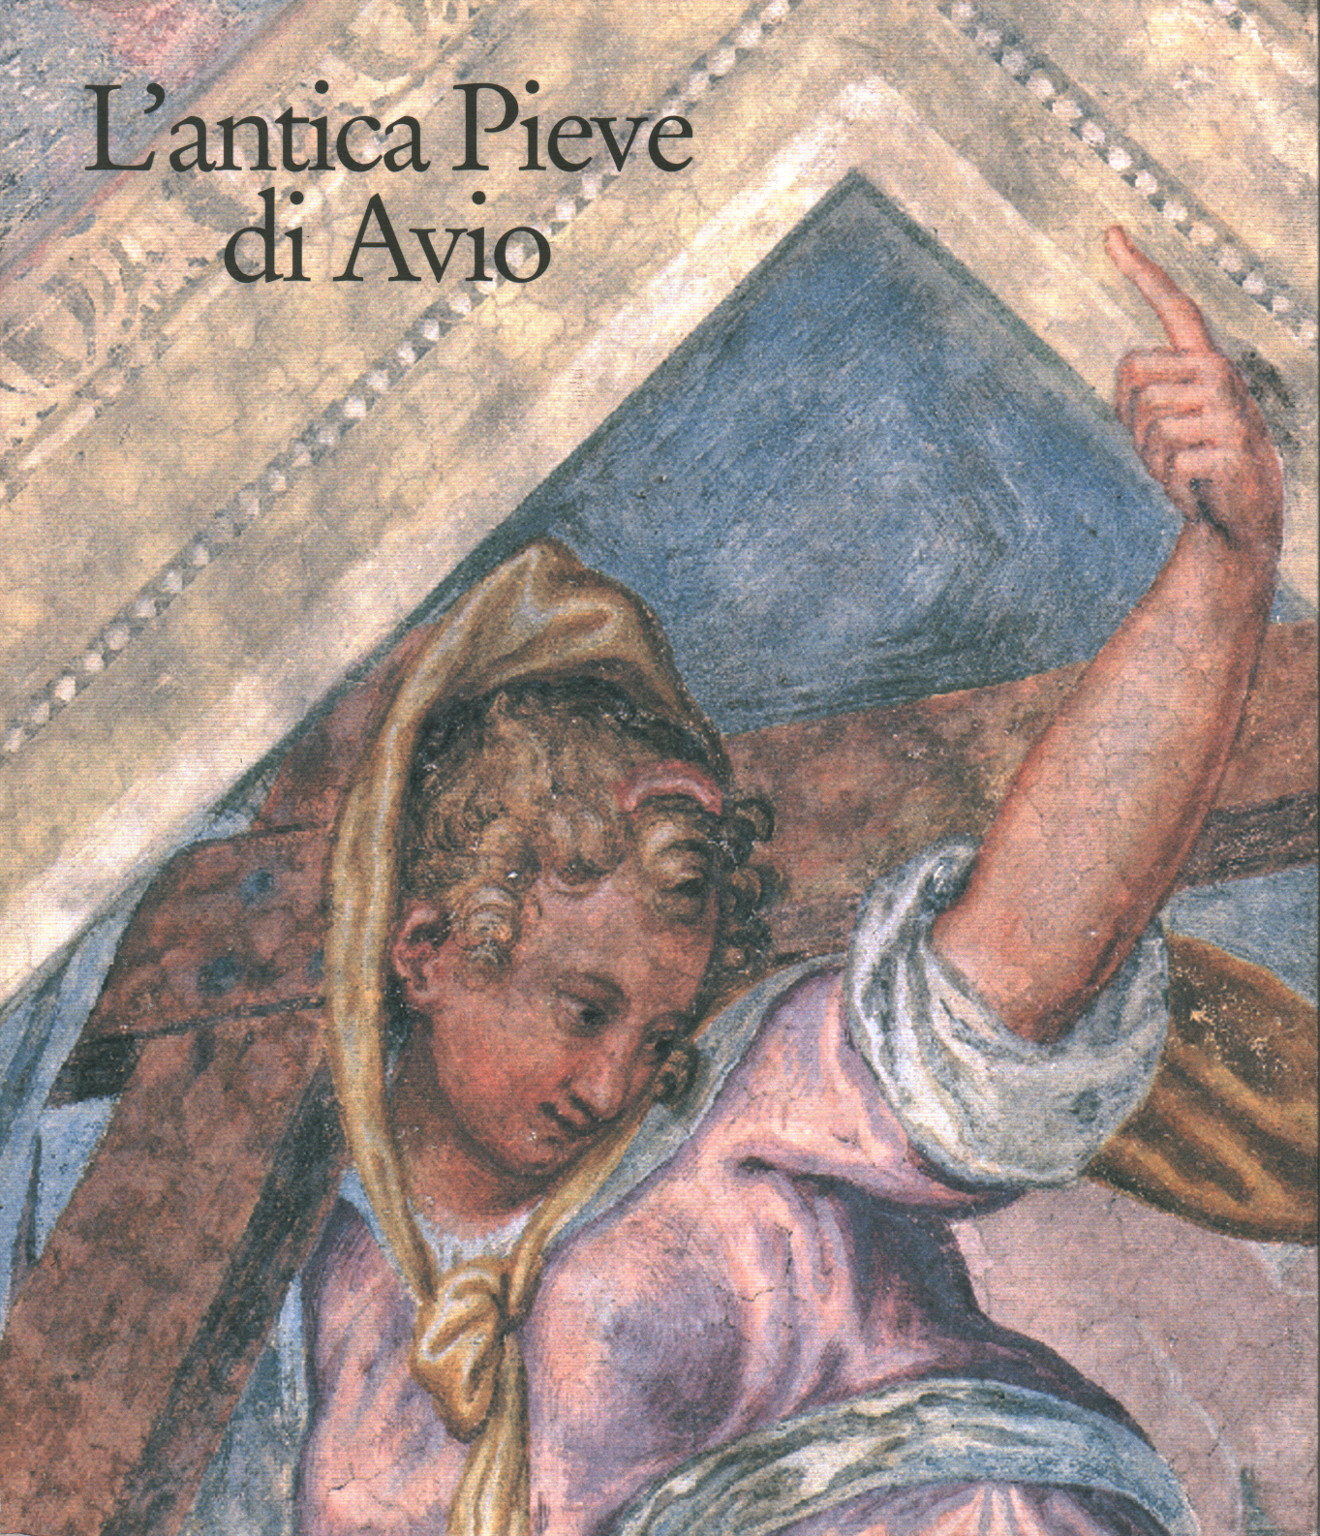 The ancient Pieve di Avio, s.a.